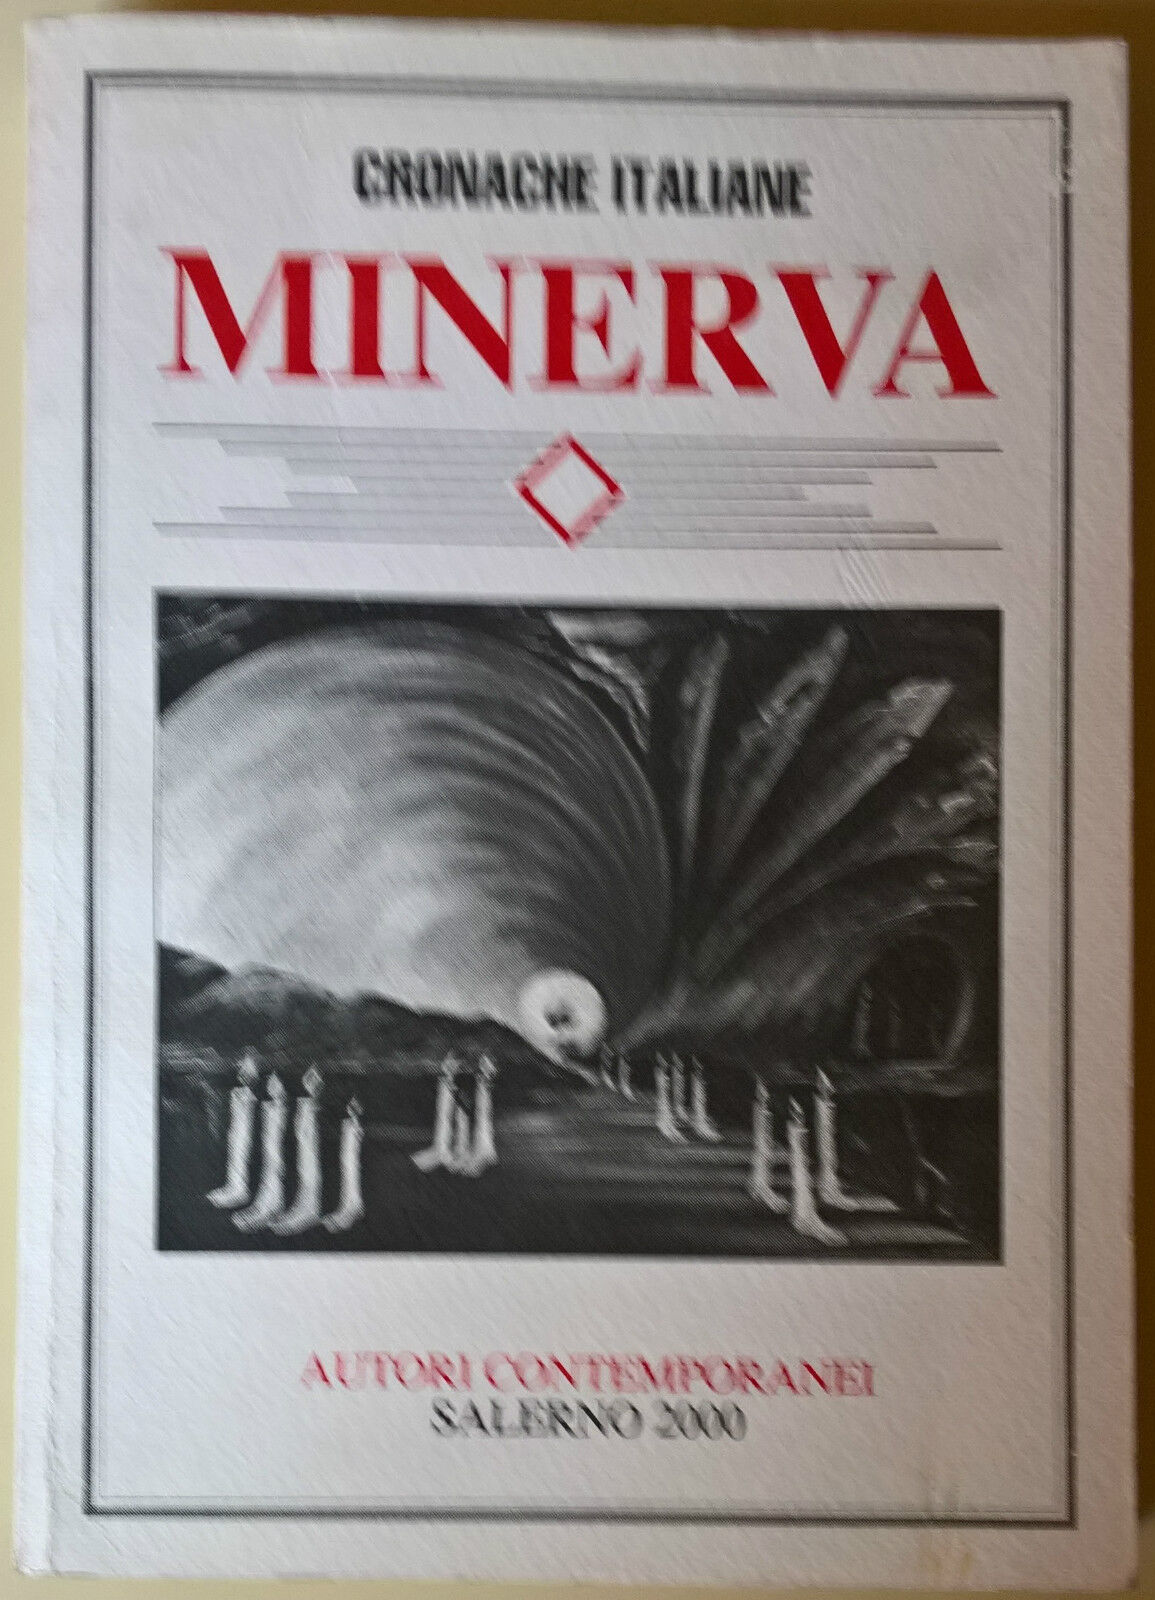 Minerva. Autori Contemporanei - Cronache Italiane, 2000 - L